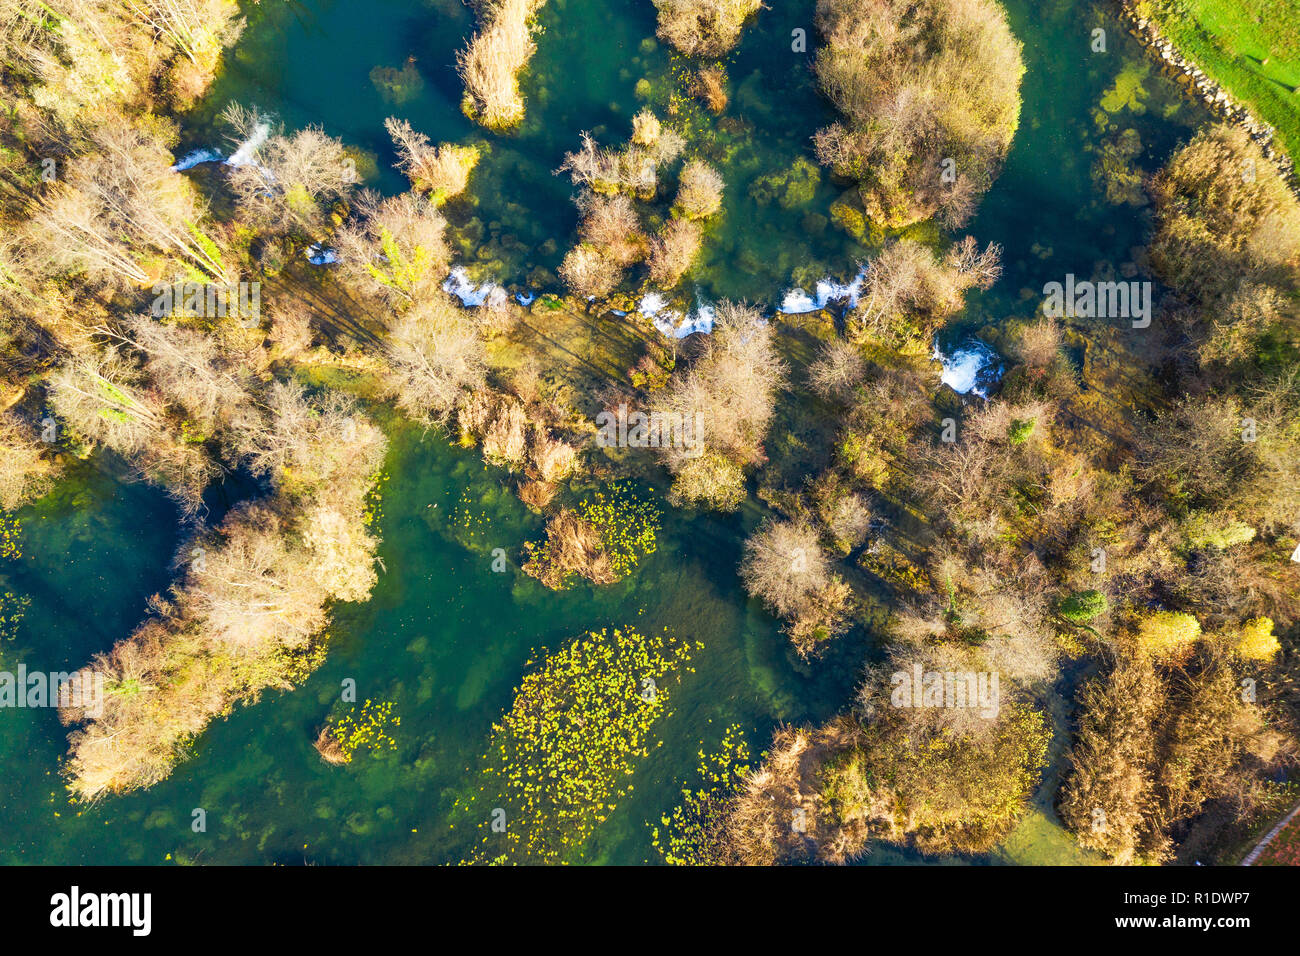 Kroatien, mreznica River von Luft, Drone schießen, von oben nach unten anzeigen, Karlovac county, grüne Natur, Wald und Wasserfälle im Herbst Stockfoto